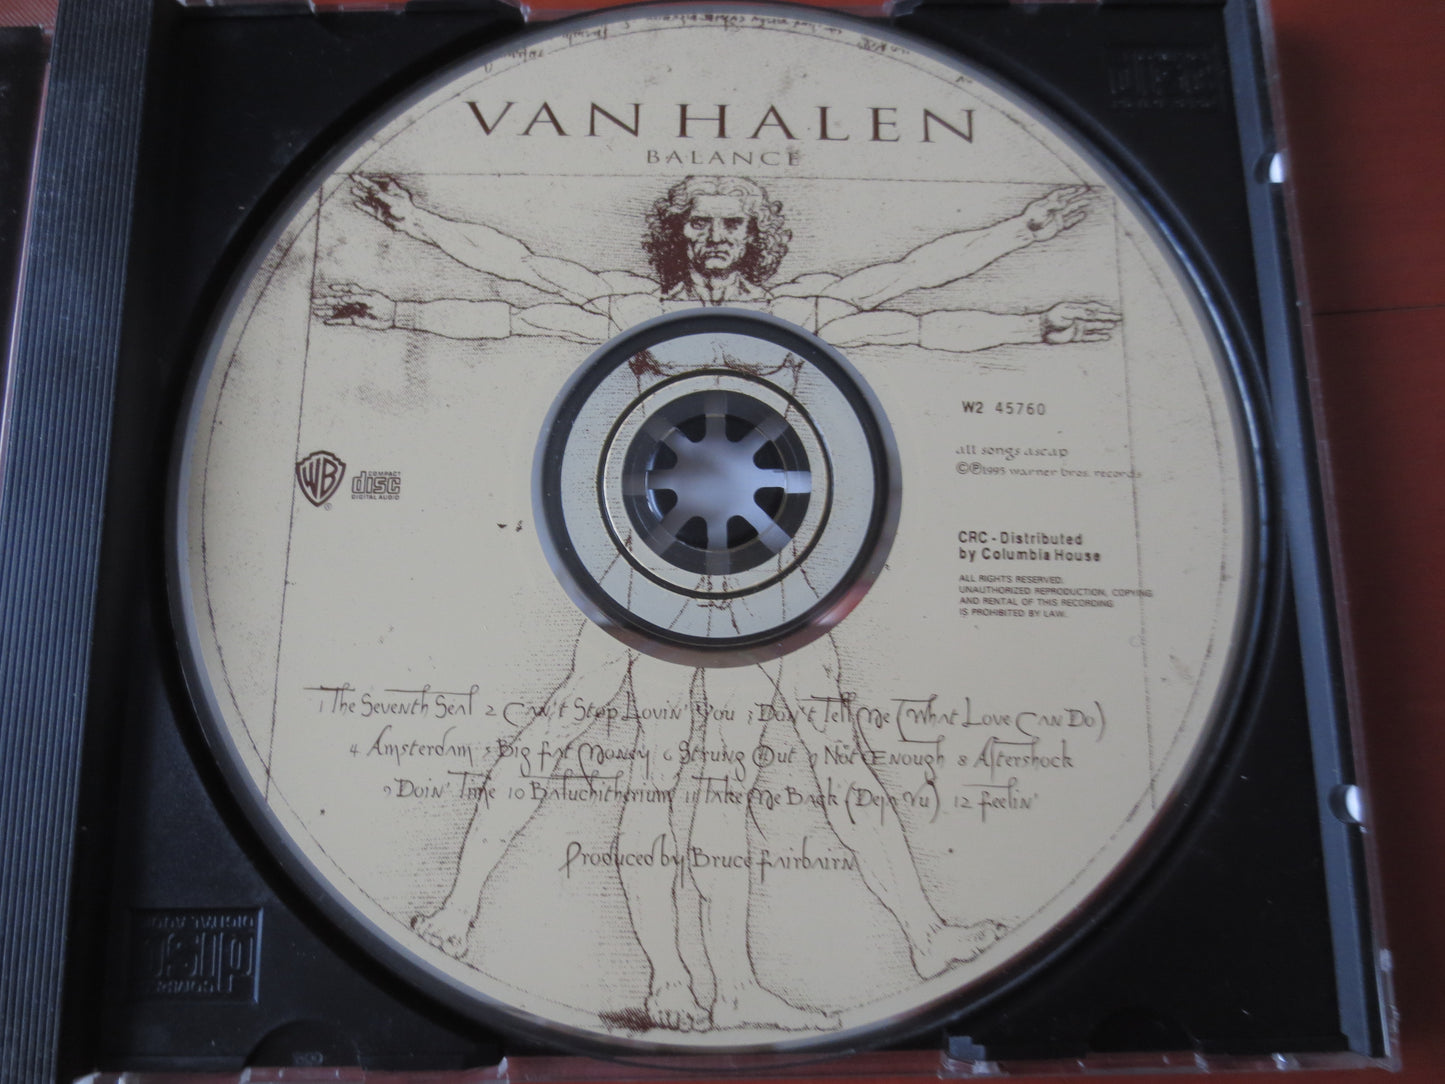 VAN HALEN Cd, Van Halen MUSIC, Balance Cd,  Rock Music Cd, Pop Cd, Vintage Rock Cd, Vintage Van Halen, 1995 Compact Discs